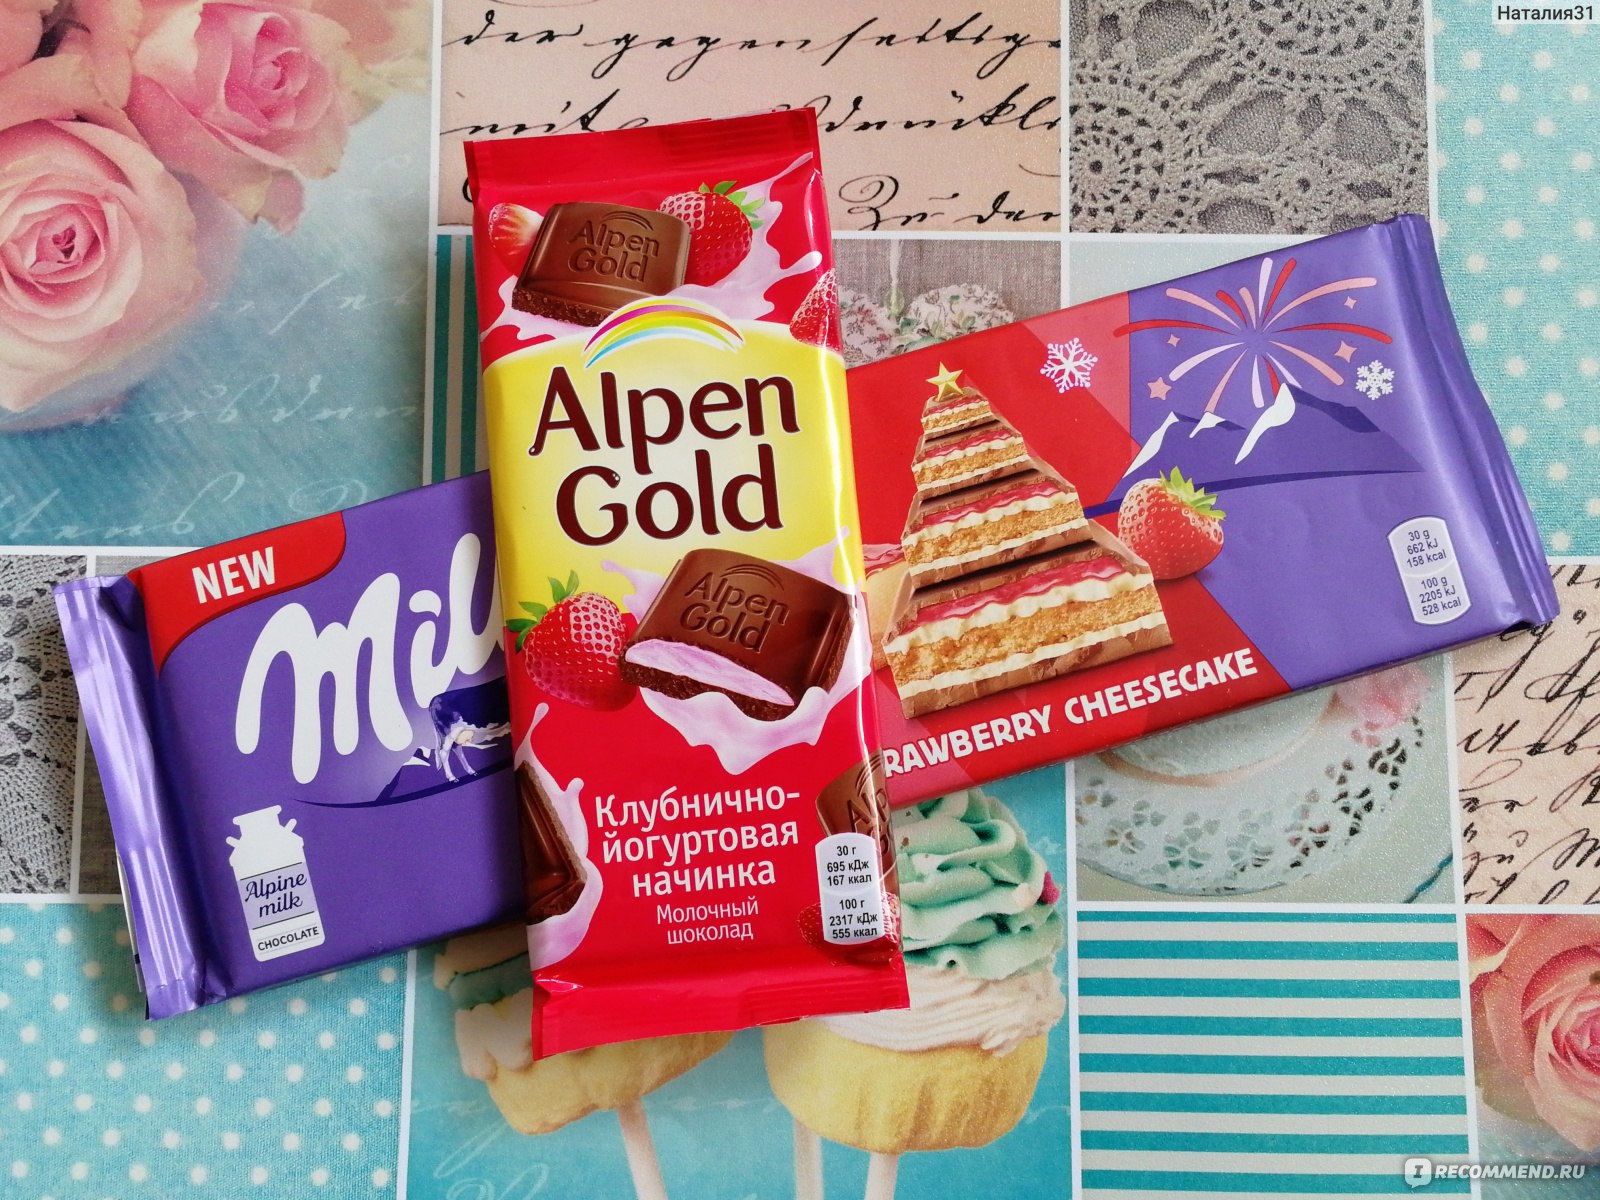 Все виды шоколада альпен гольд фото с названиями